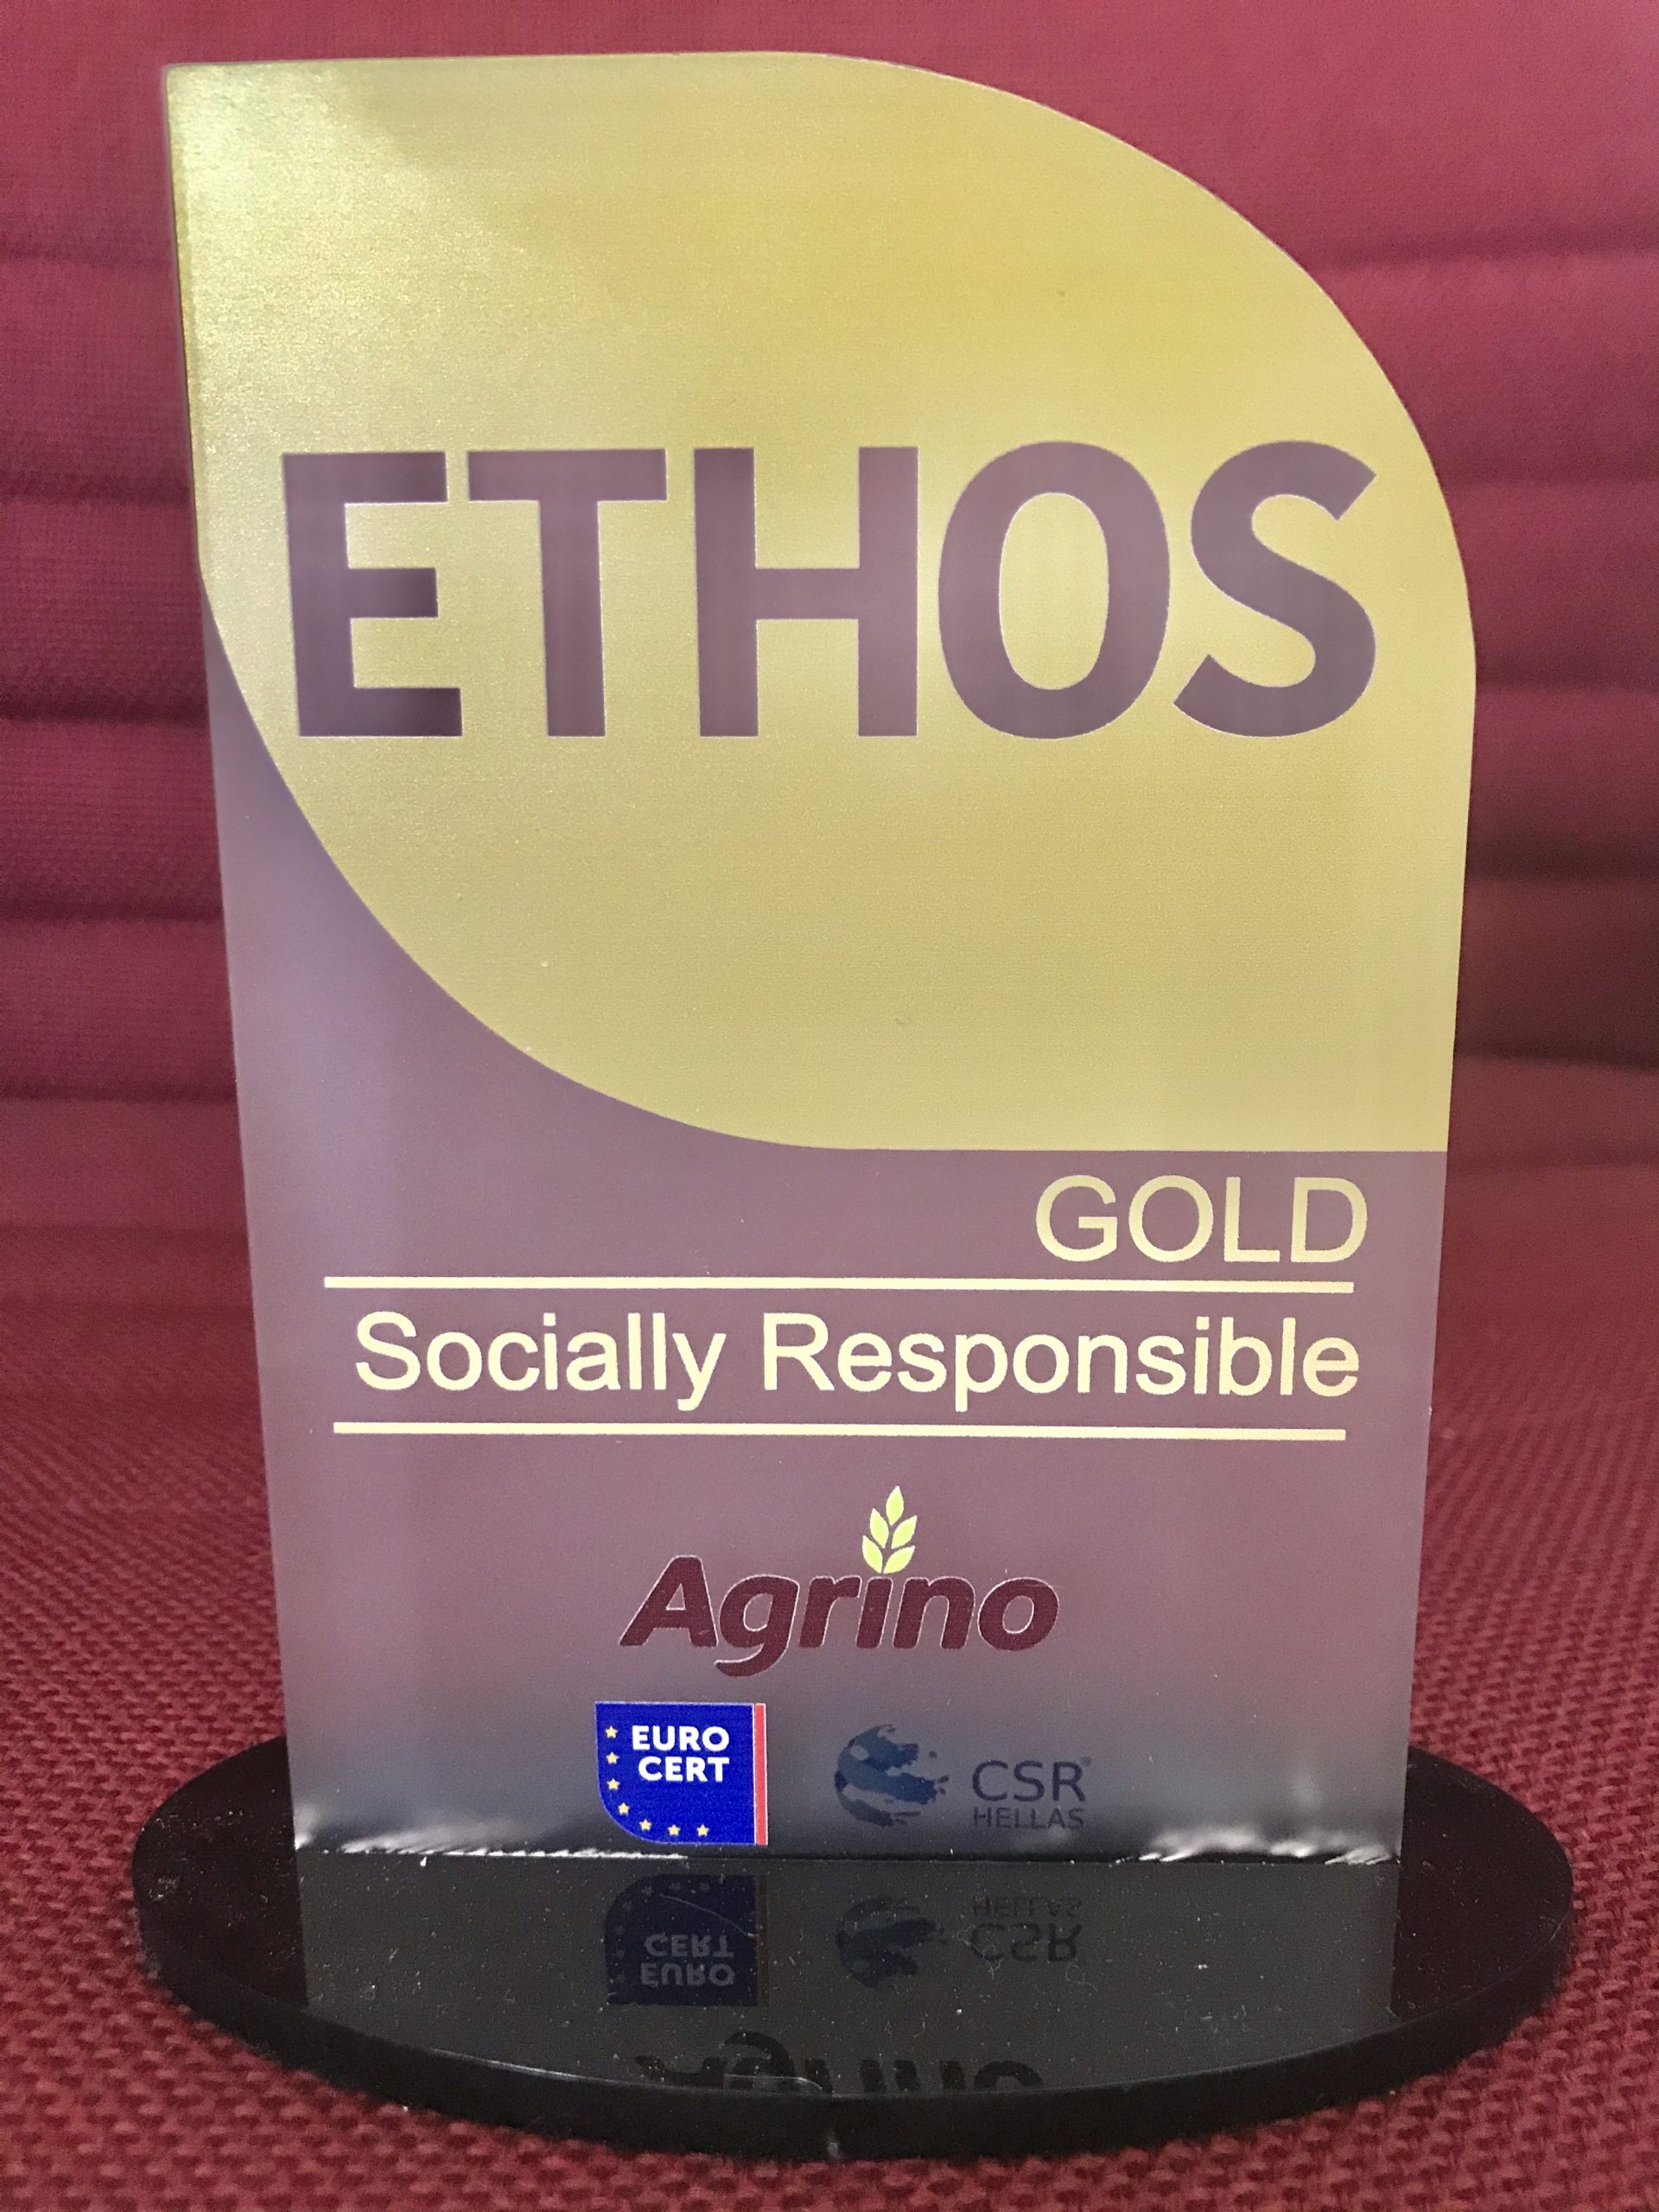 Με το «Πρότυπο ETHOS» Gold για την αξιολόγηση της Εταιρικής Κοινωνικής Ευθύνης  βραβεύτηκε η Agrino